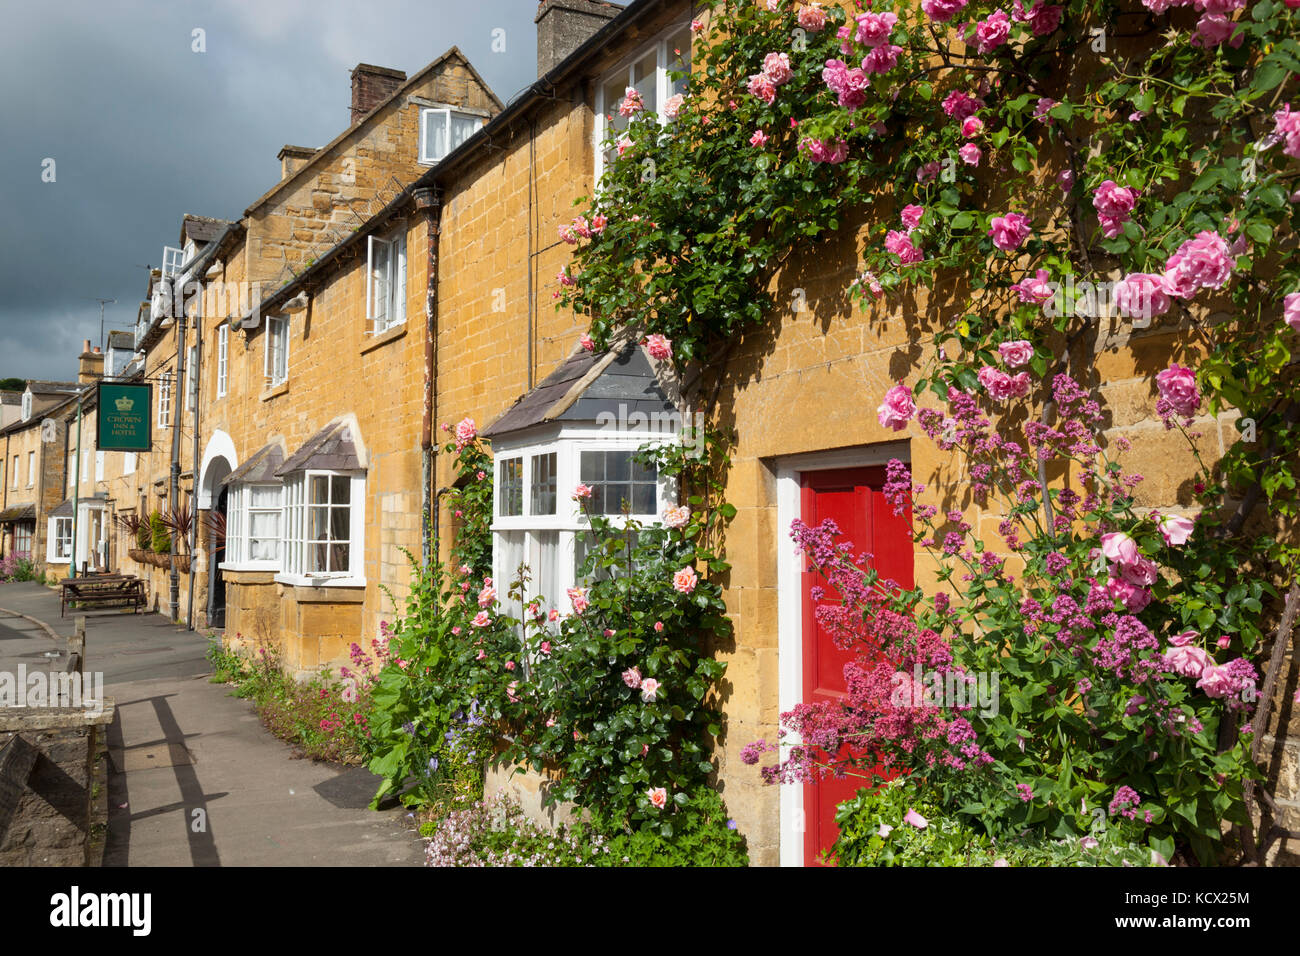 Façade couverte de Rose cottages en pierre de Cotswold le long de High Street, Blockley, Cotswolds, Gloucestershire, Angleterre, Royaume-Uni, Europe Banque D'Images